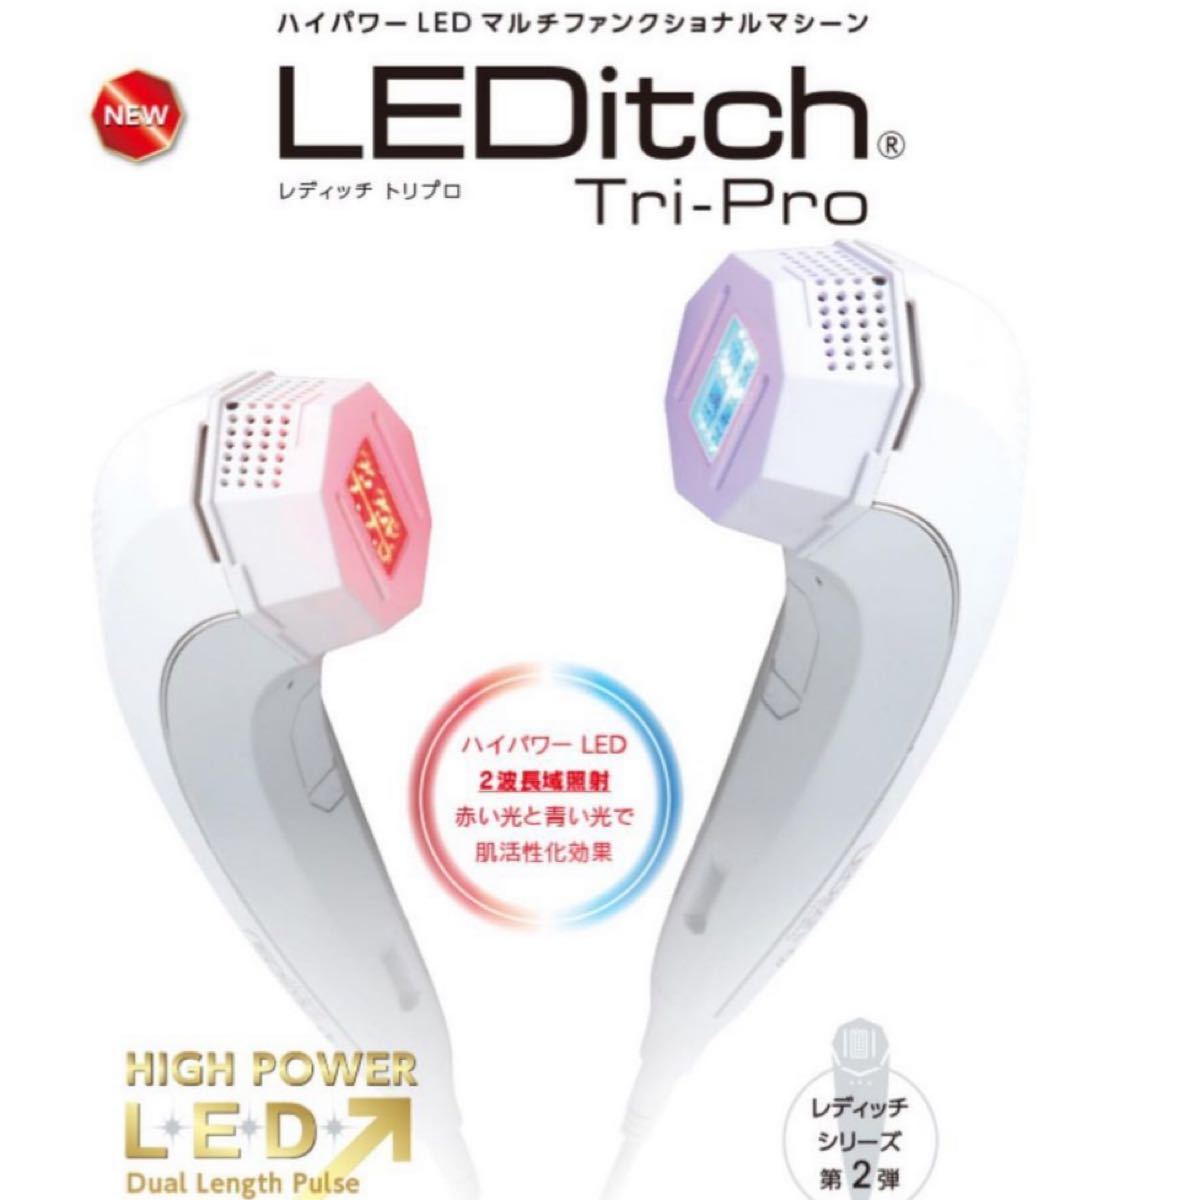 LEDitch Tri-Pro 美容器 | www.jarussi.com.br